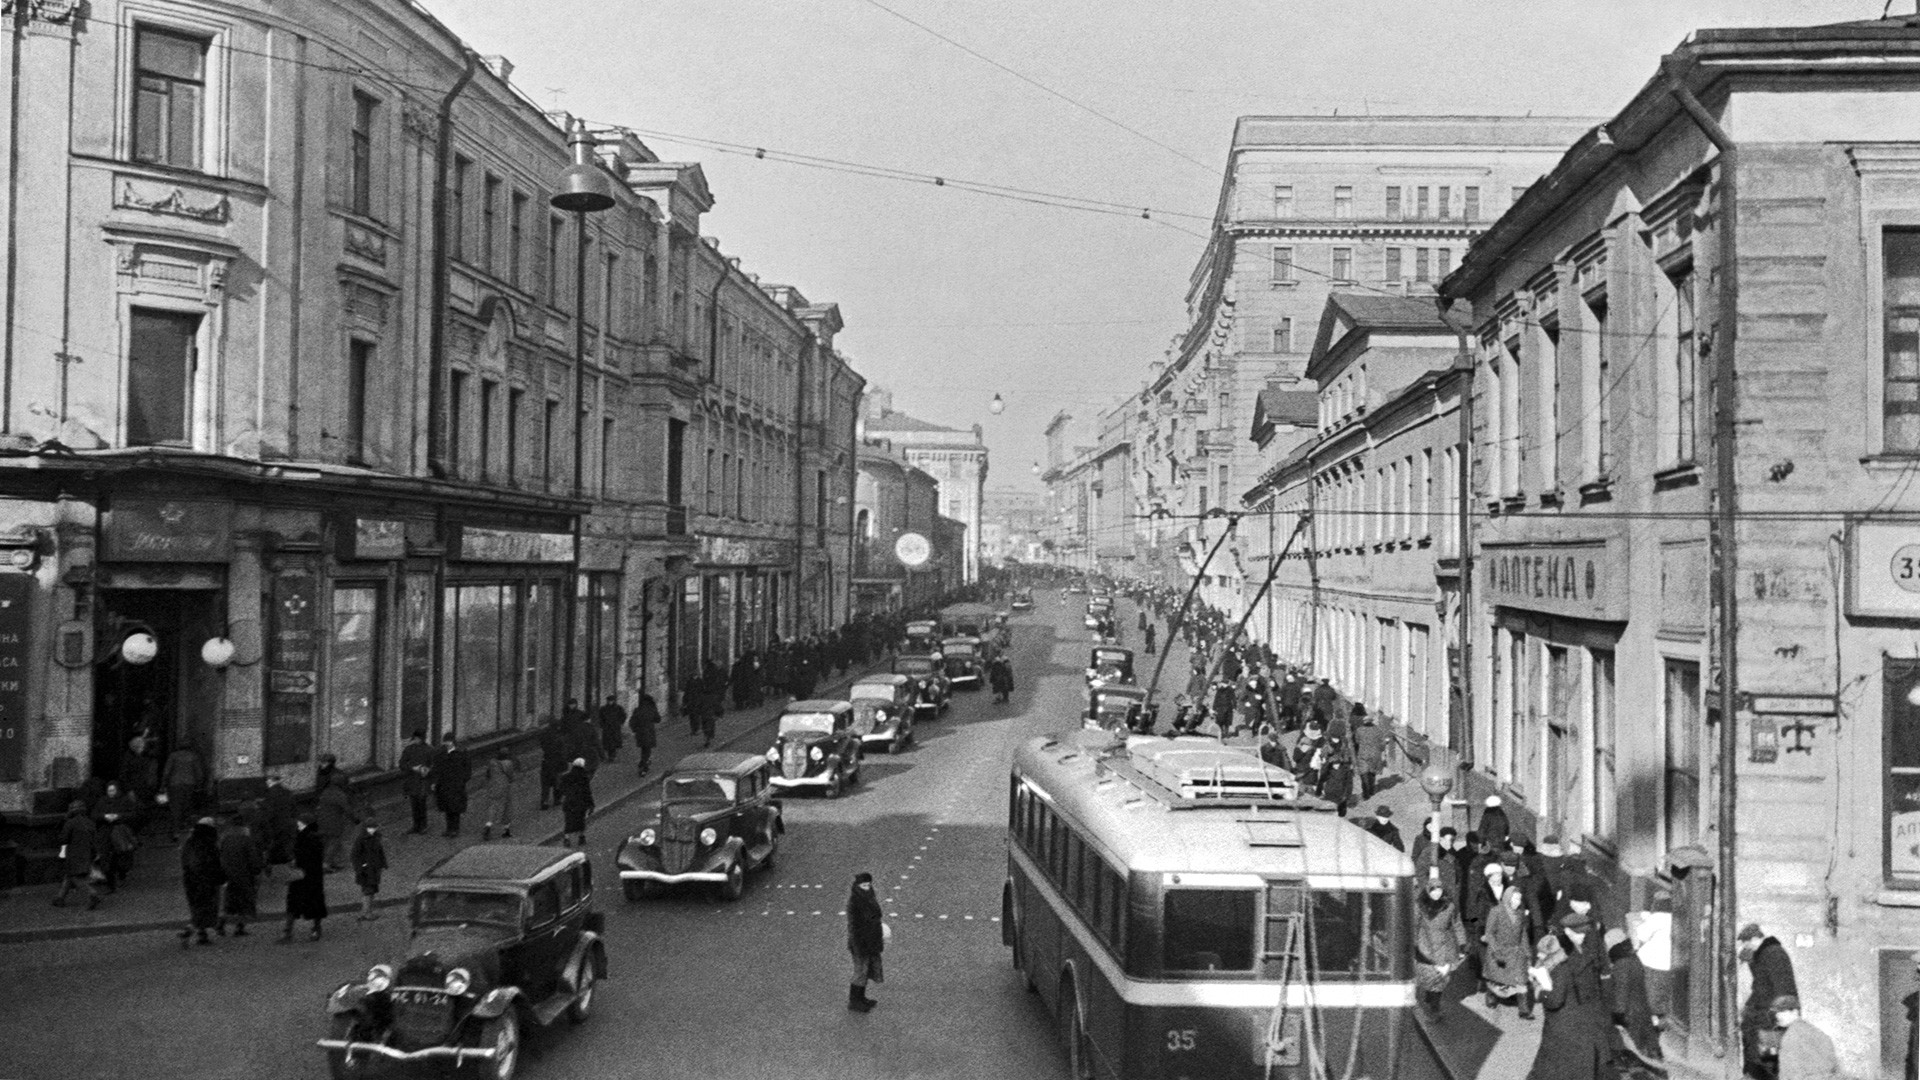 La via Gorkij, oggi Tverskaya, in epoca sovietica